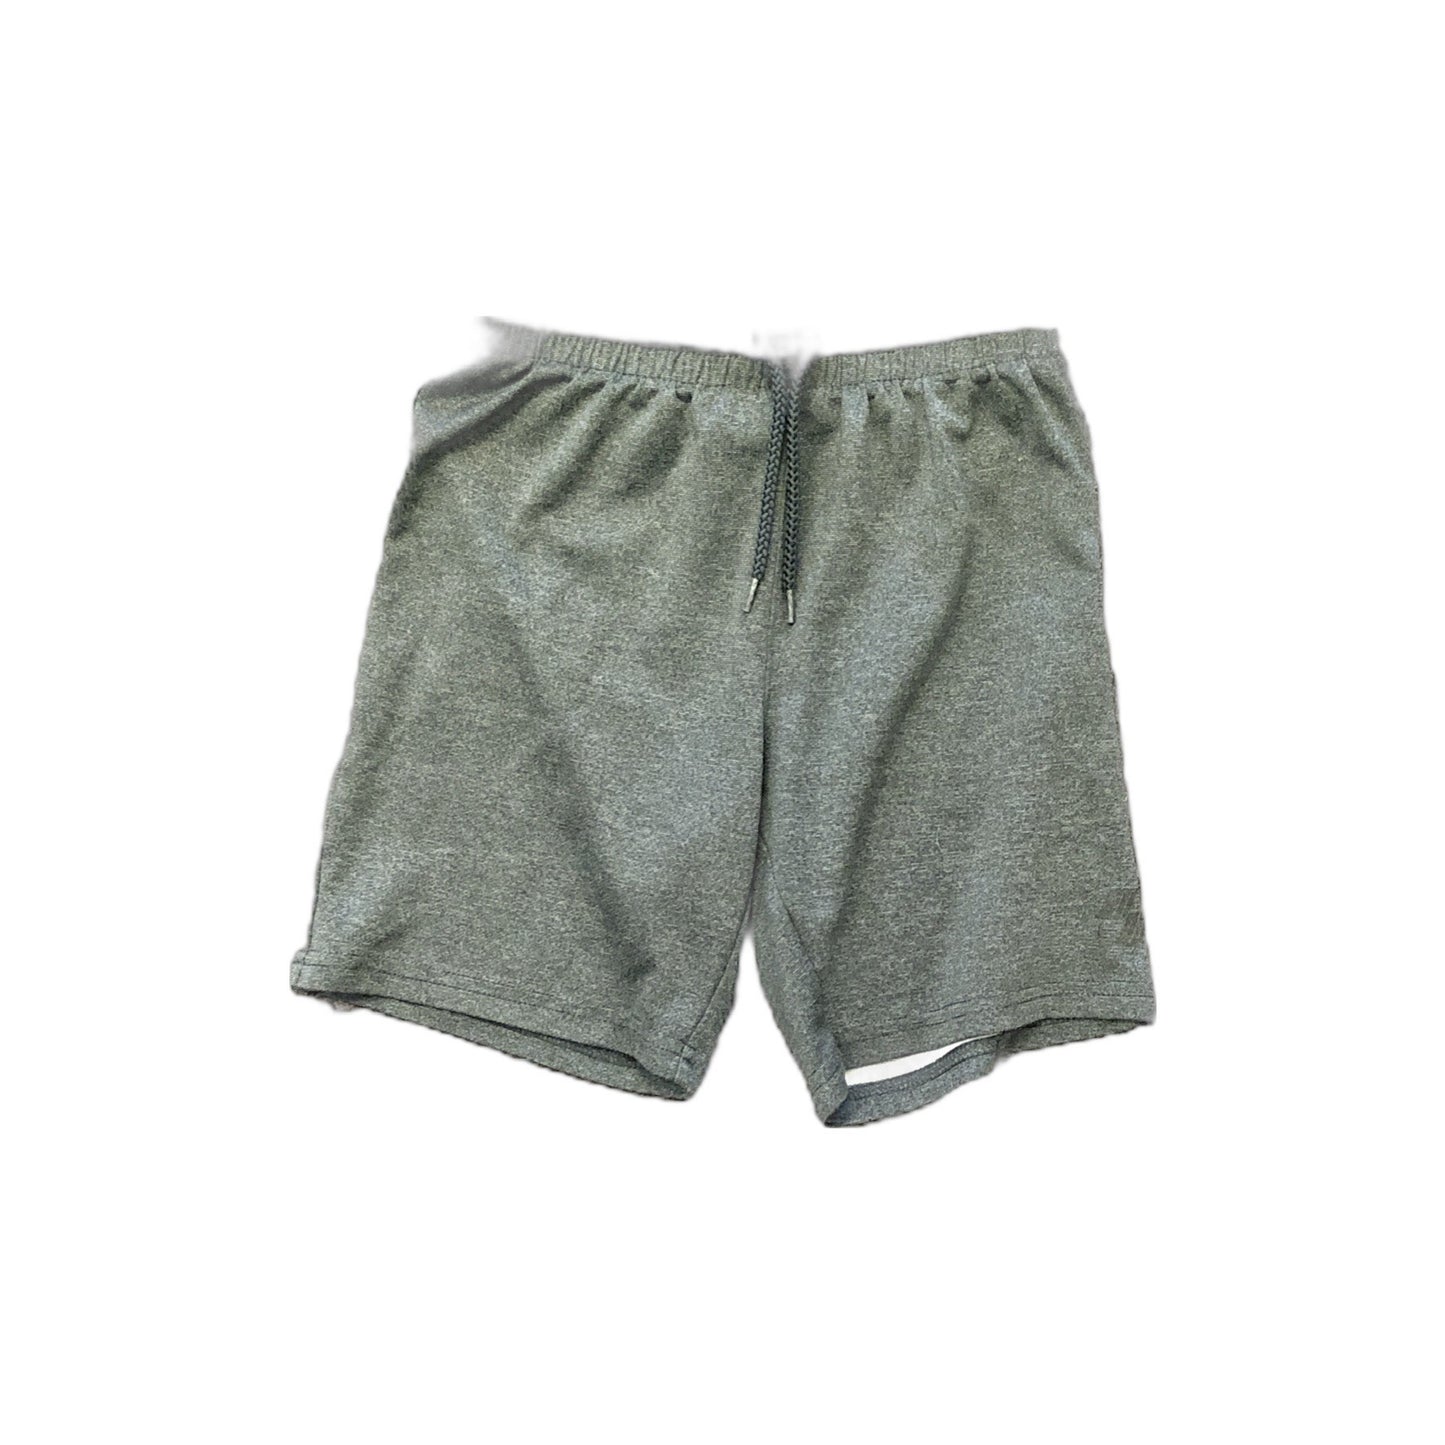 Dark Gray Shorts Size Small 5/6